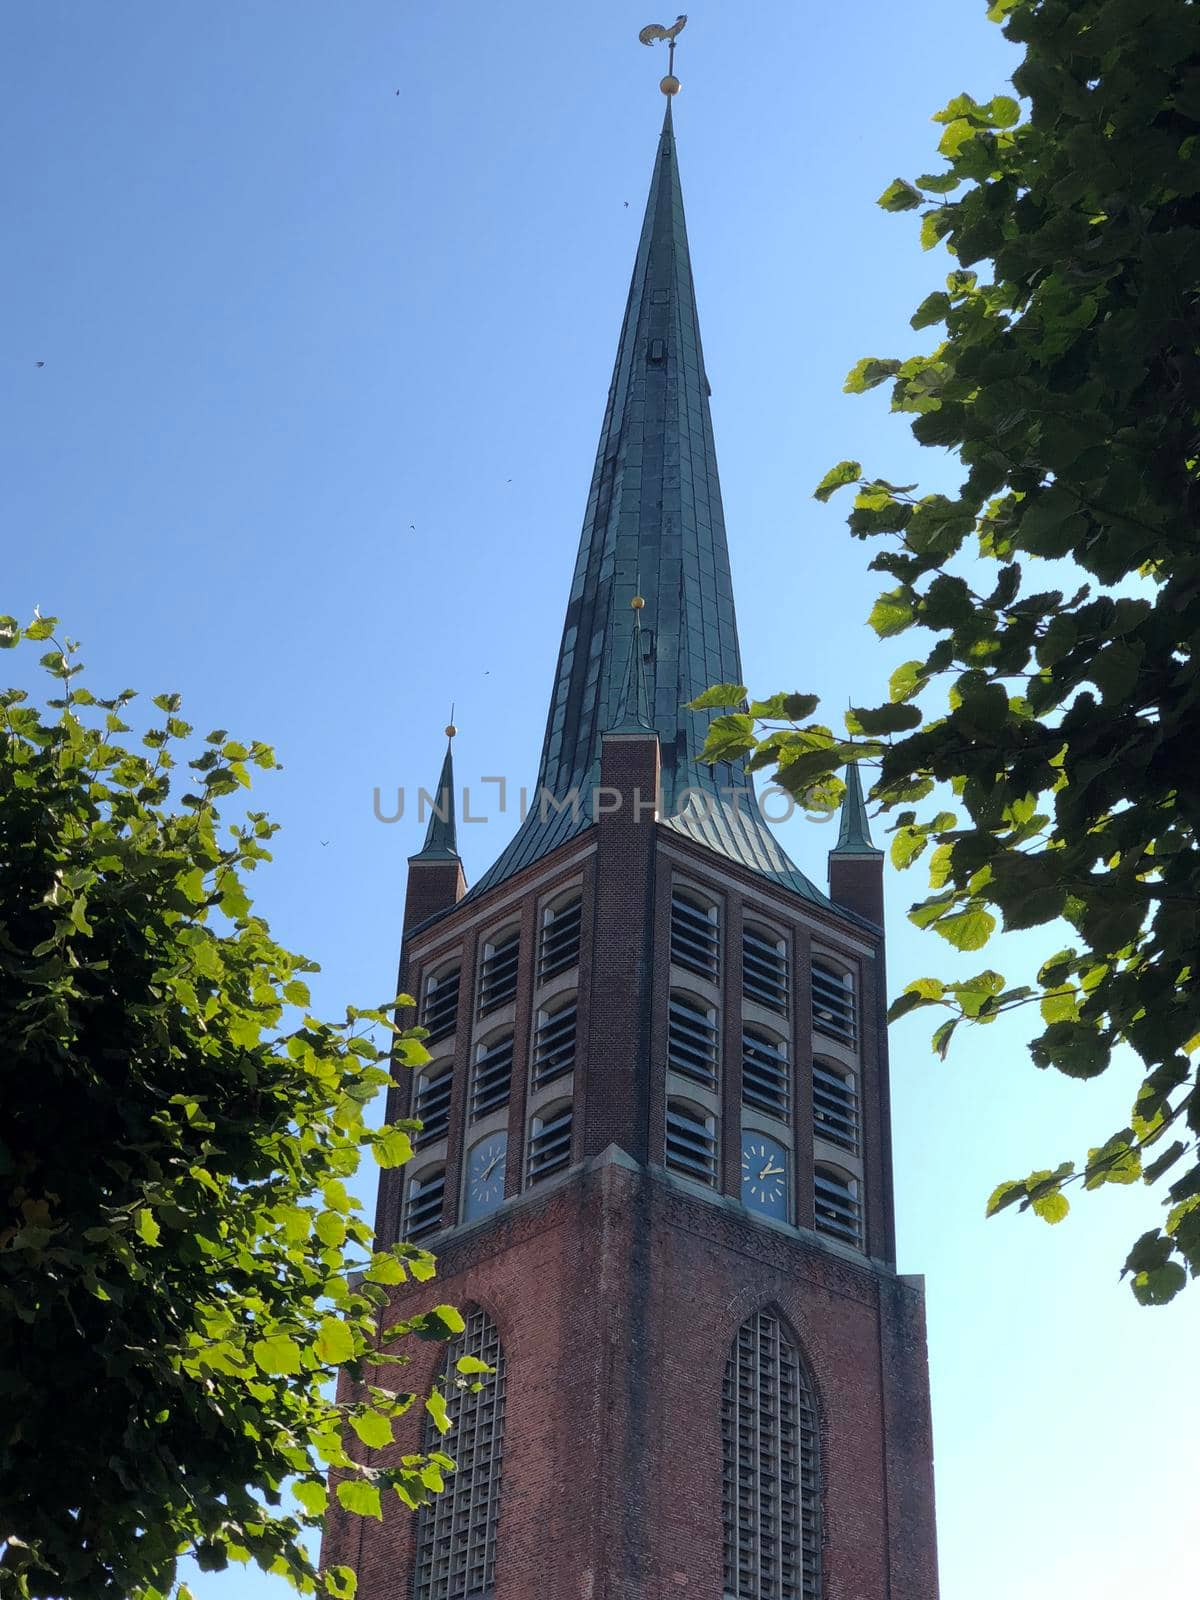 Schweizer church in Emden by traveltelly